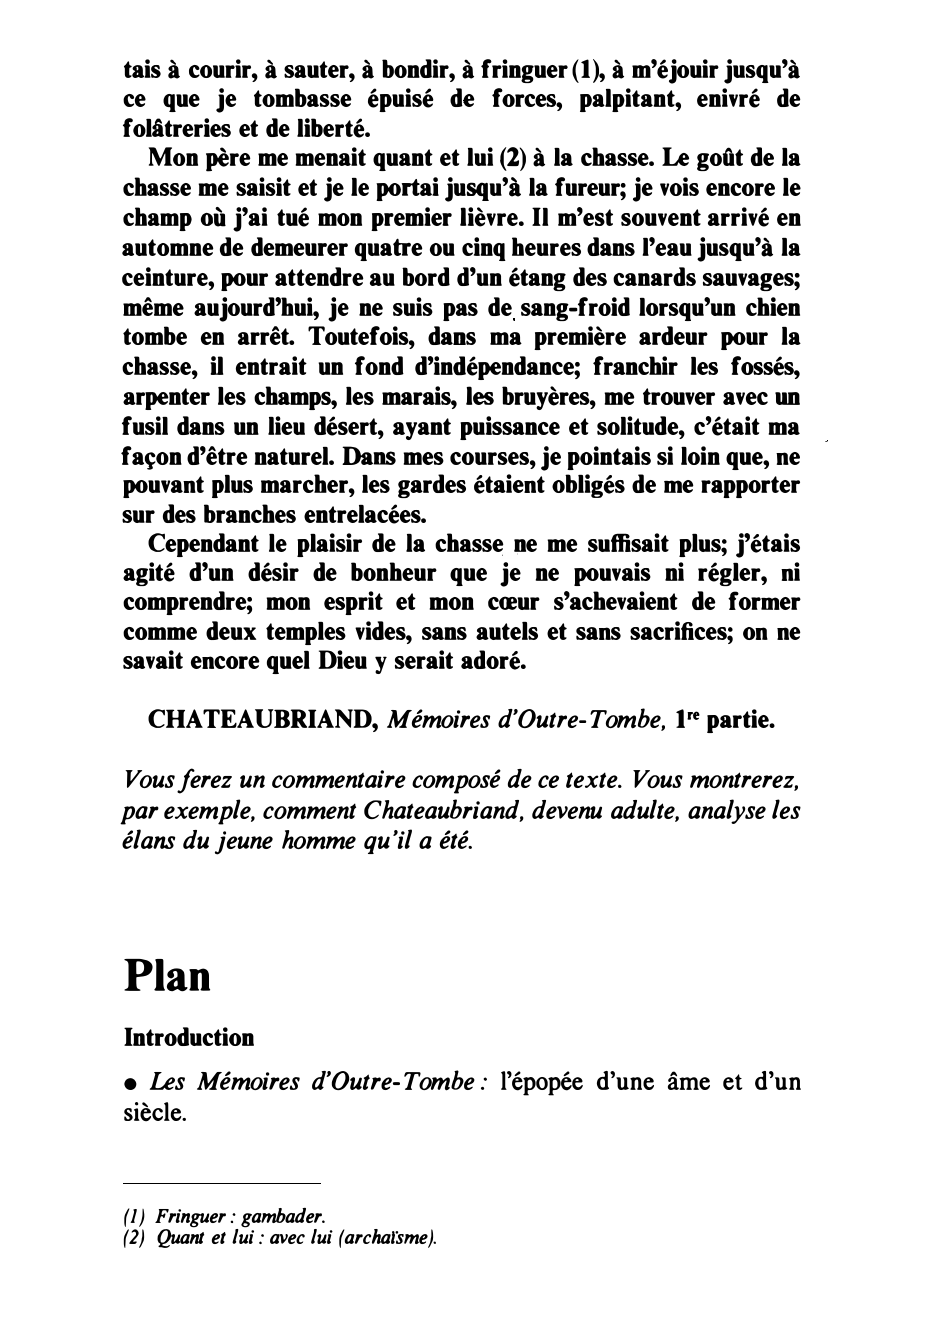 Prévisualisation du document CHATEAUBRIAND, Mémoires d'Outre- Tombe, 1re partie : comment Chateaubriand, devenu adulte, analyse les élans du jeune homme qu’il a été.